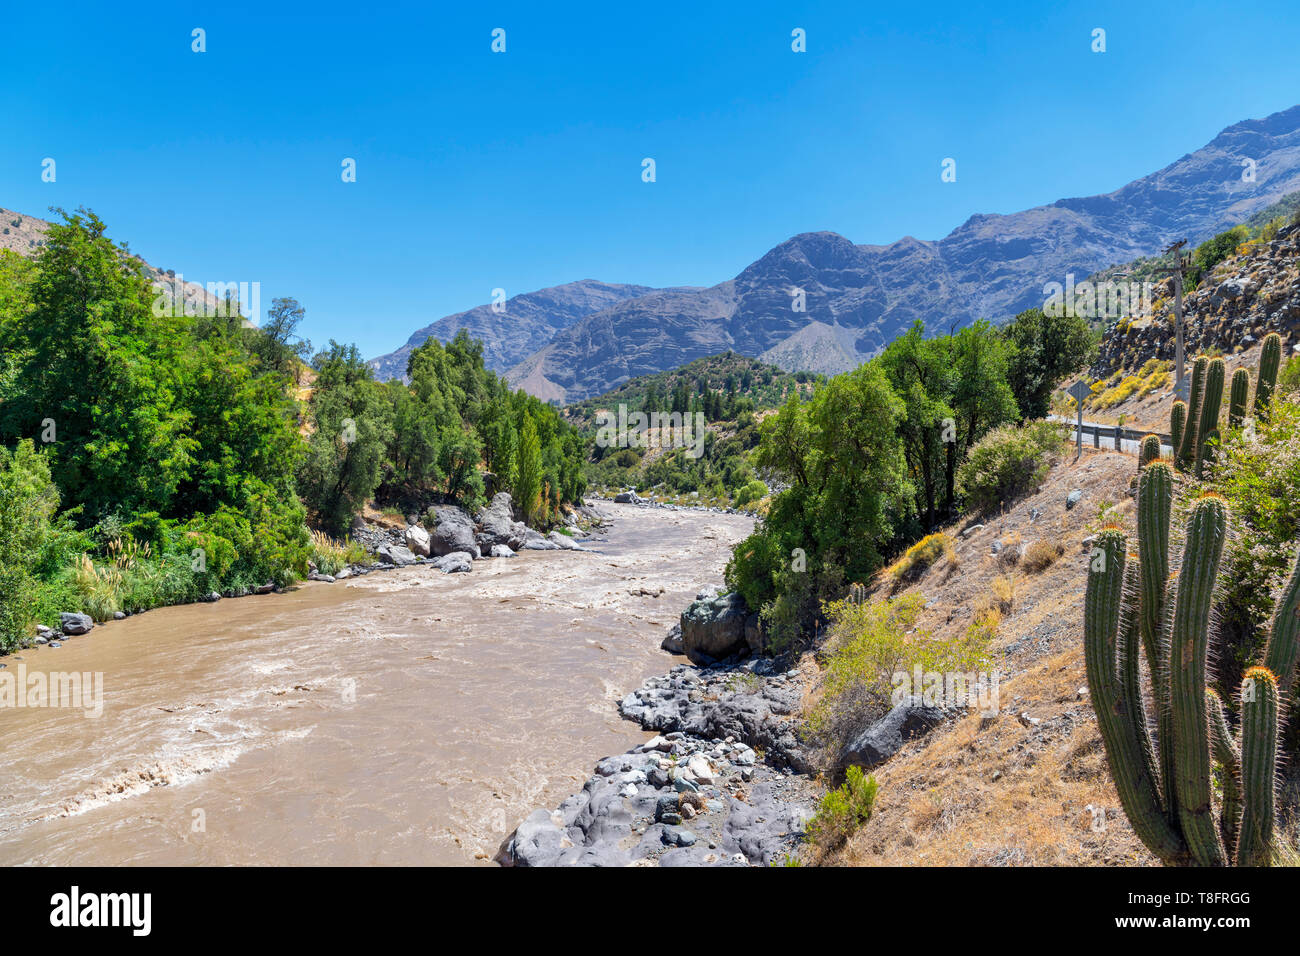 Chile, Cajon del Maipo. The Maipo River near El Ingenio, Maipo Canyon, Andes Mountains, Chile, South America Stock Photo